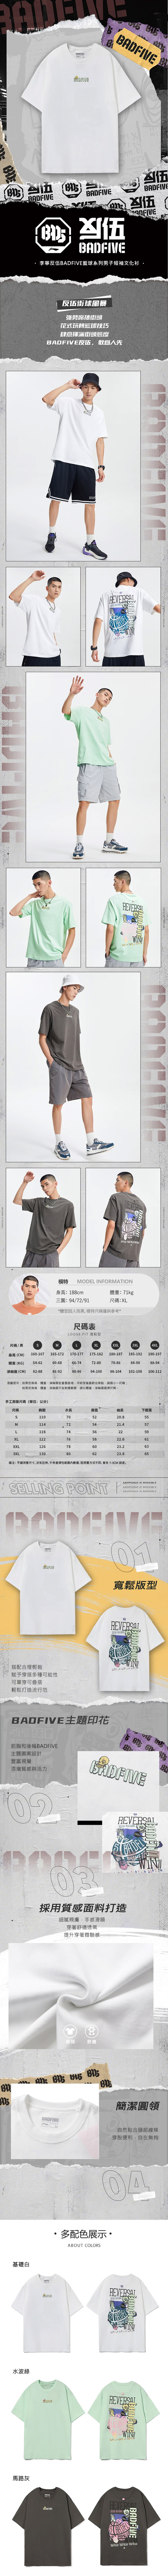 李寧反伍BADFIVE籃球系列男子寬鬆短袖文化衫